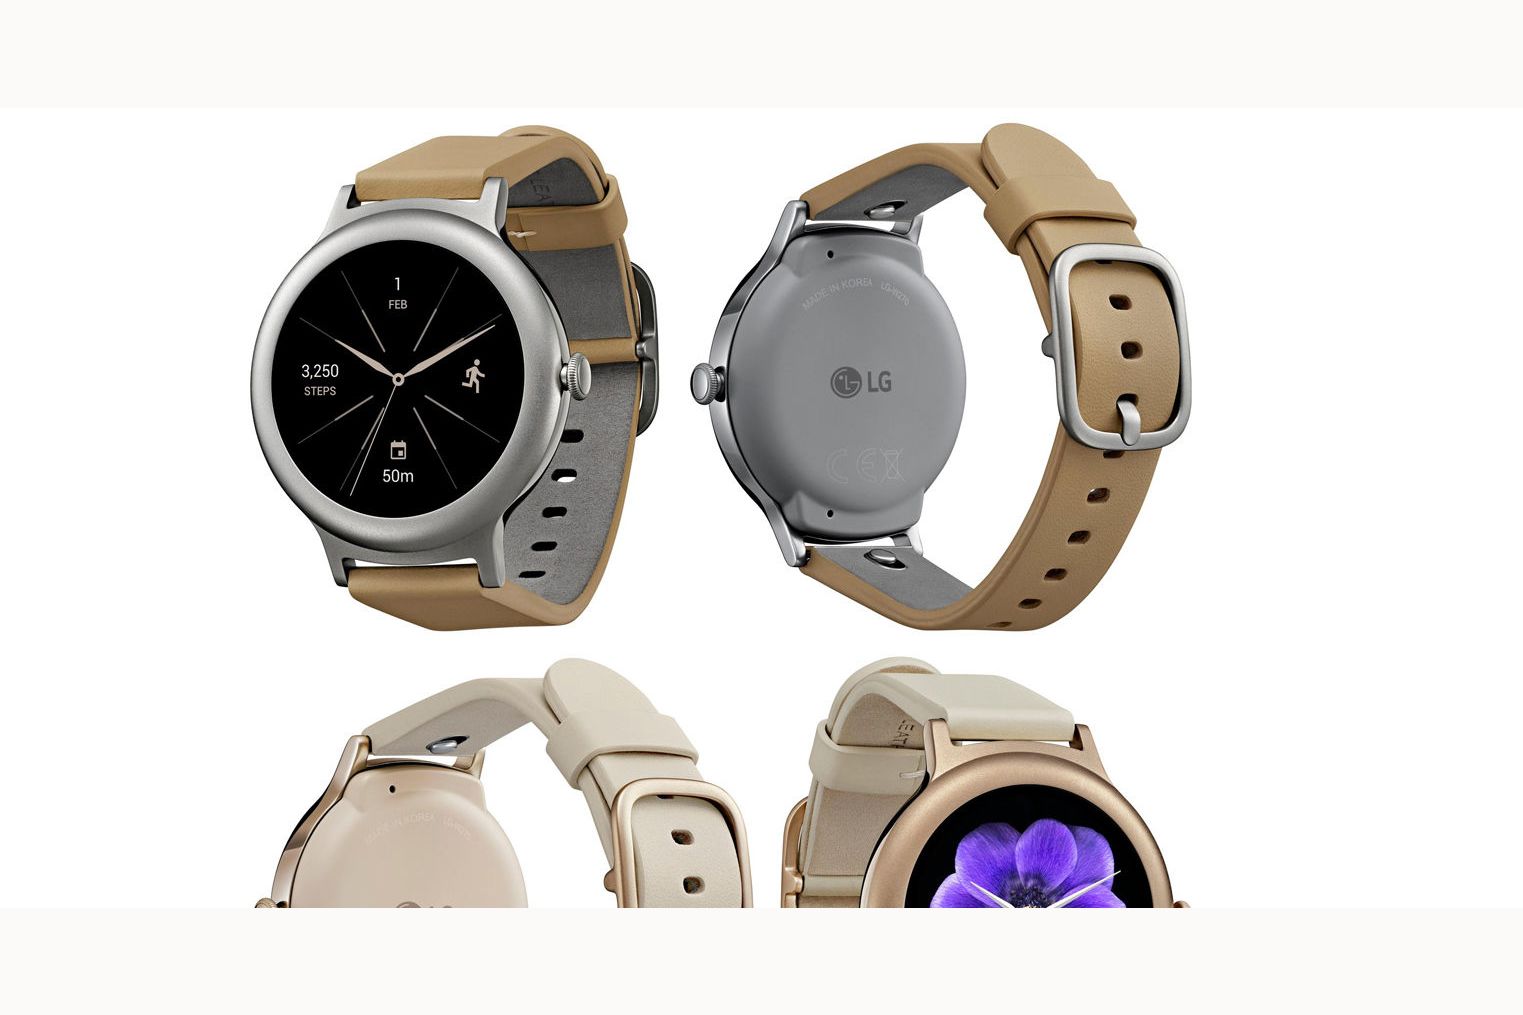 LG tiene listo un nuevo smartwatch con Android Wear 2.0, según certificación filtrada